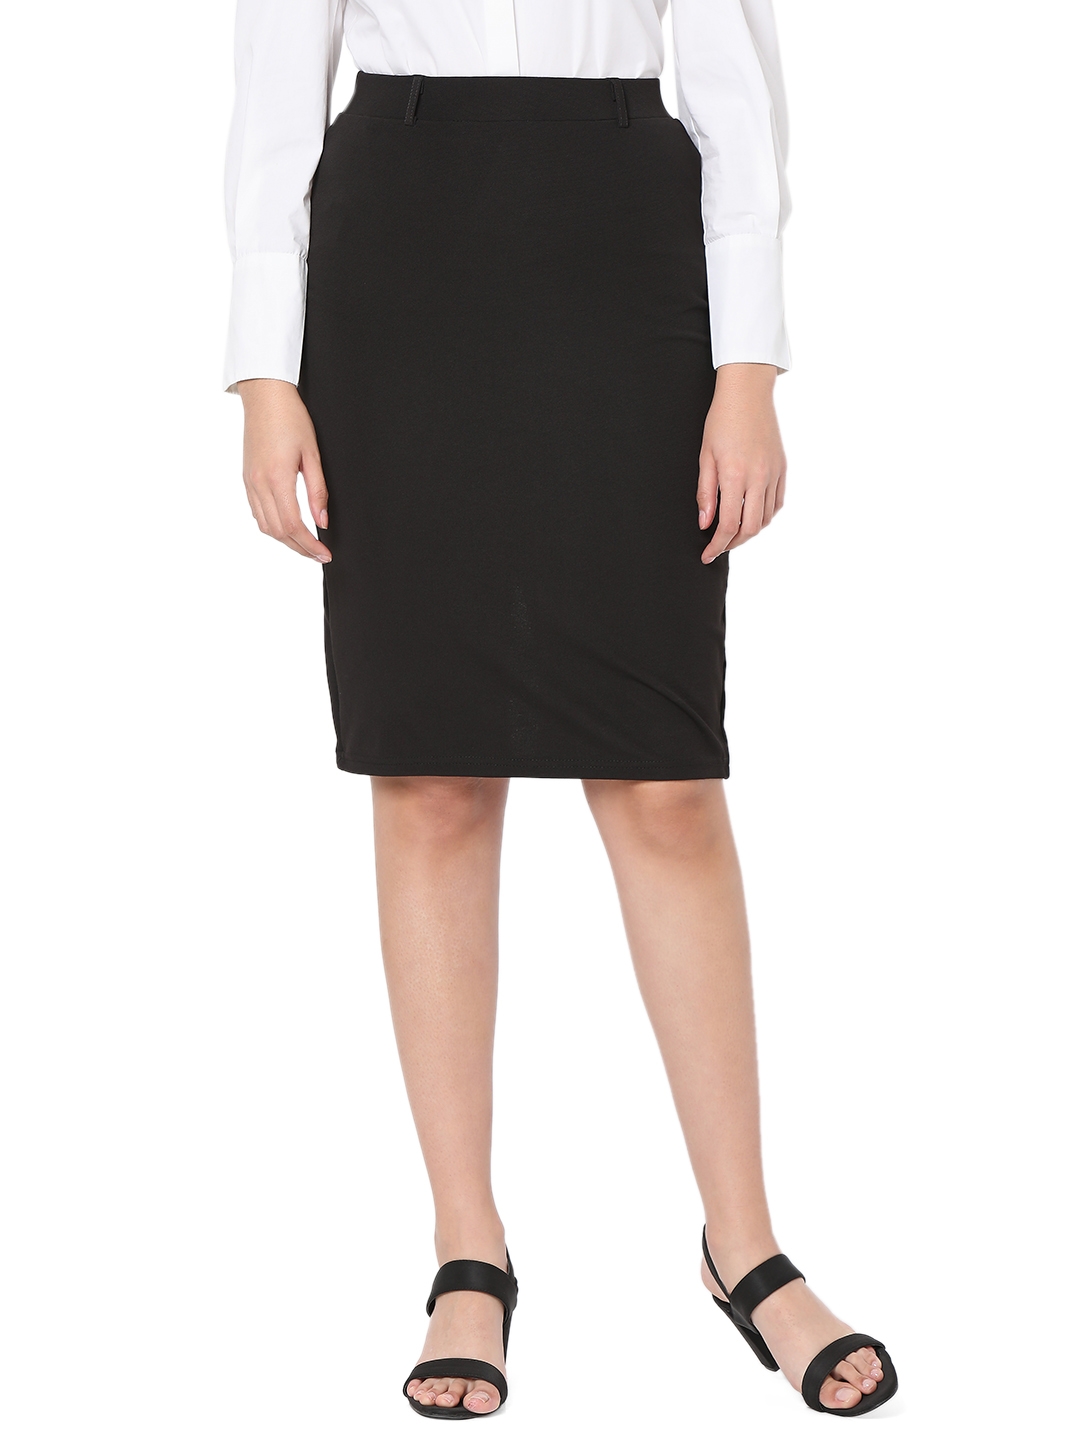 Smarty Pants | Smarty Pants women's cotton lycra black color pencil skirt. 0